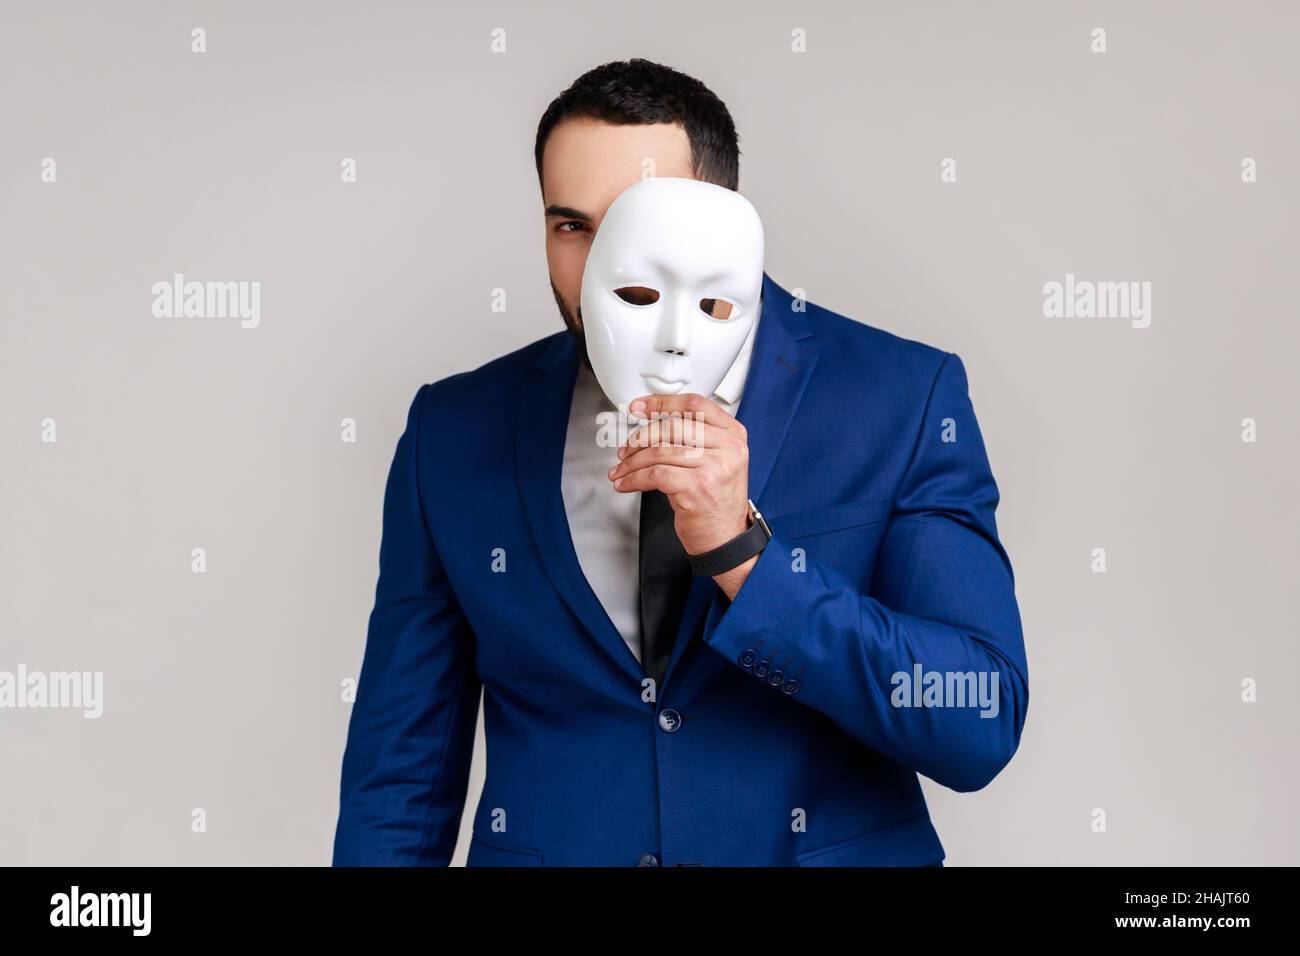 Bärtiger Mann mit weißer Maske, bedeckt das Gesicht, steht mit ernstem Ausdruck, multipler Persönlichkeitsstörung, trägt einen offiziellen Style-Anzug. Innenaufnahme des Studios isoliert auf grauem Hintergrund. Stockfoto